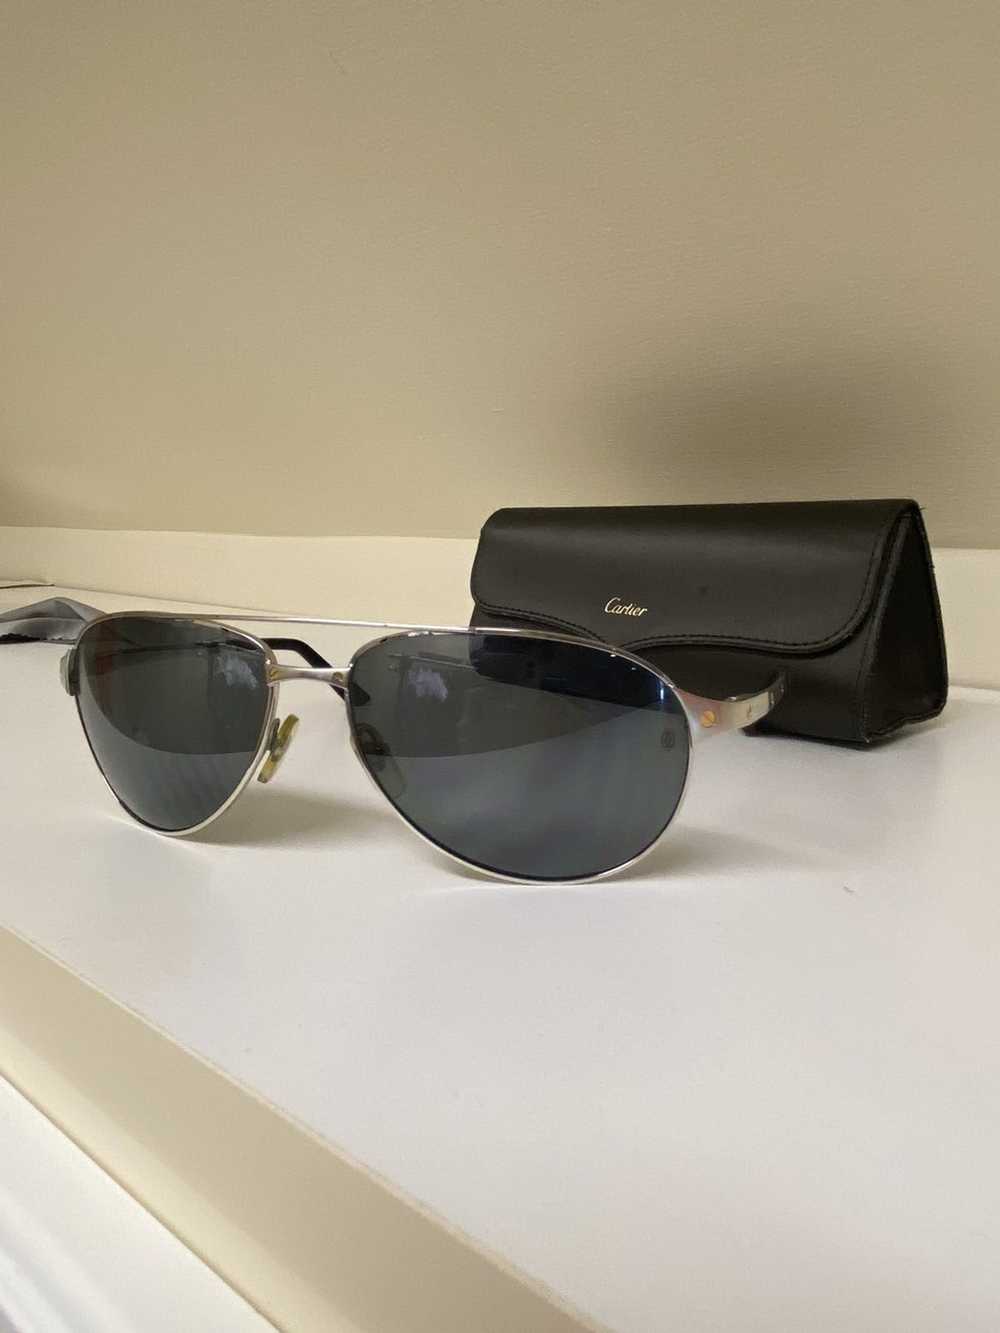 Cartier Cartier sunglasses - image 6